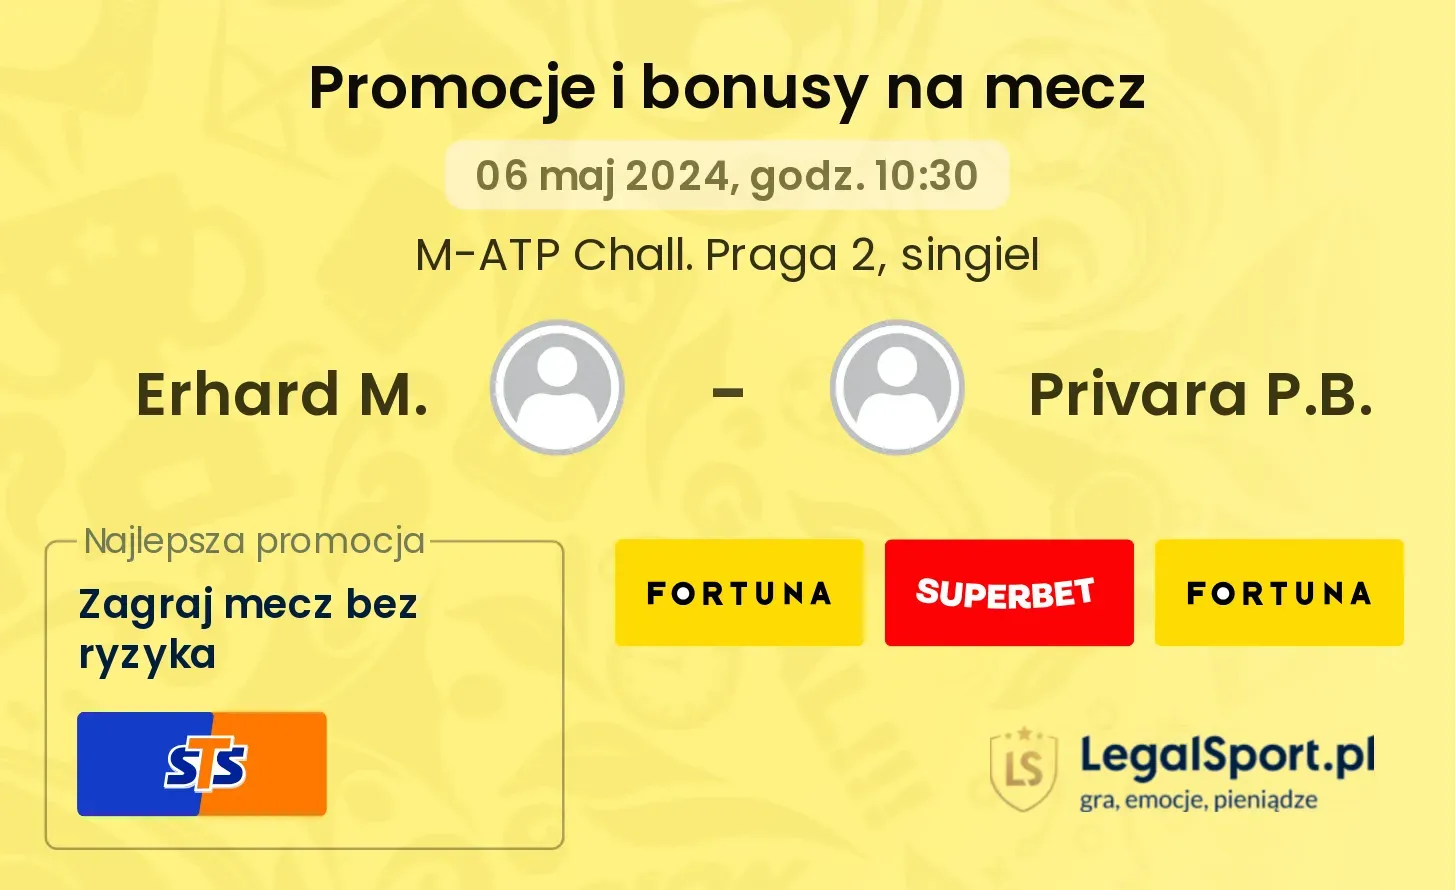 Erhard M. - Privara P.B. promocje bonusy na mecz